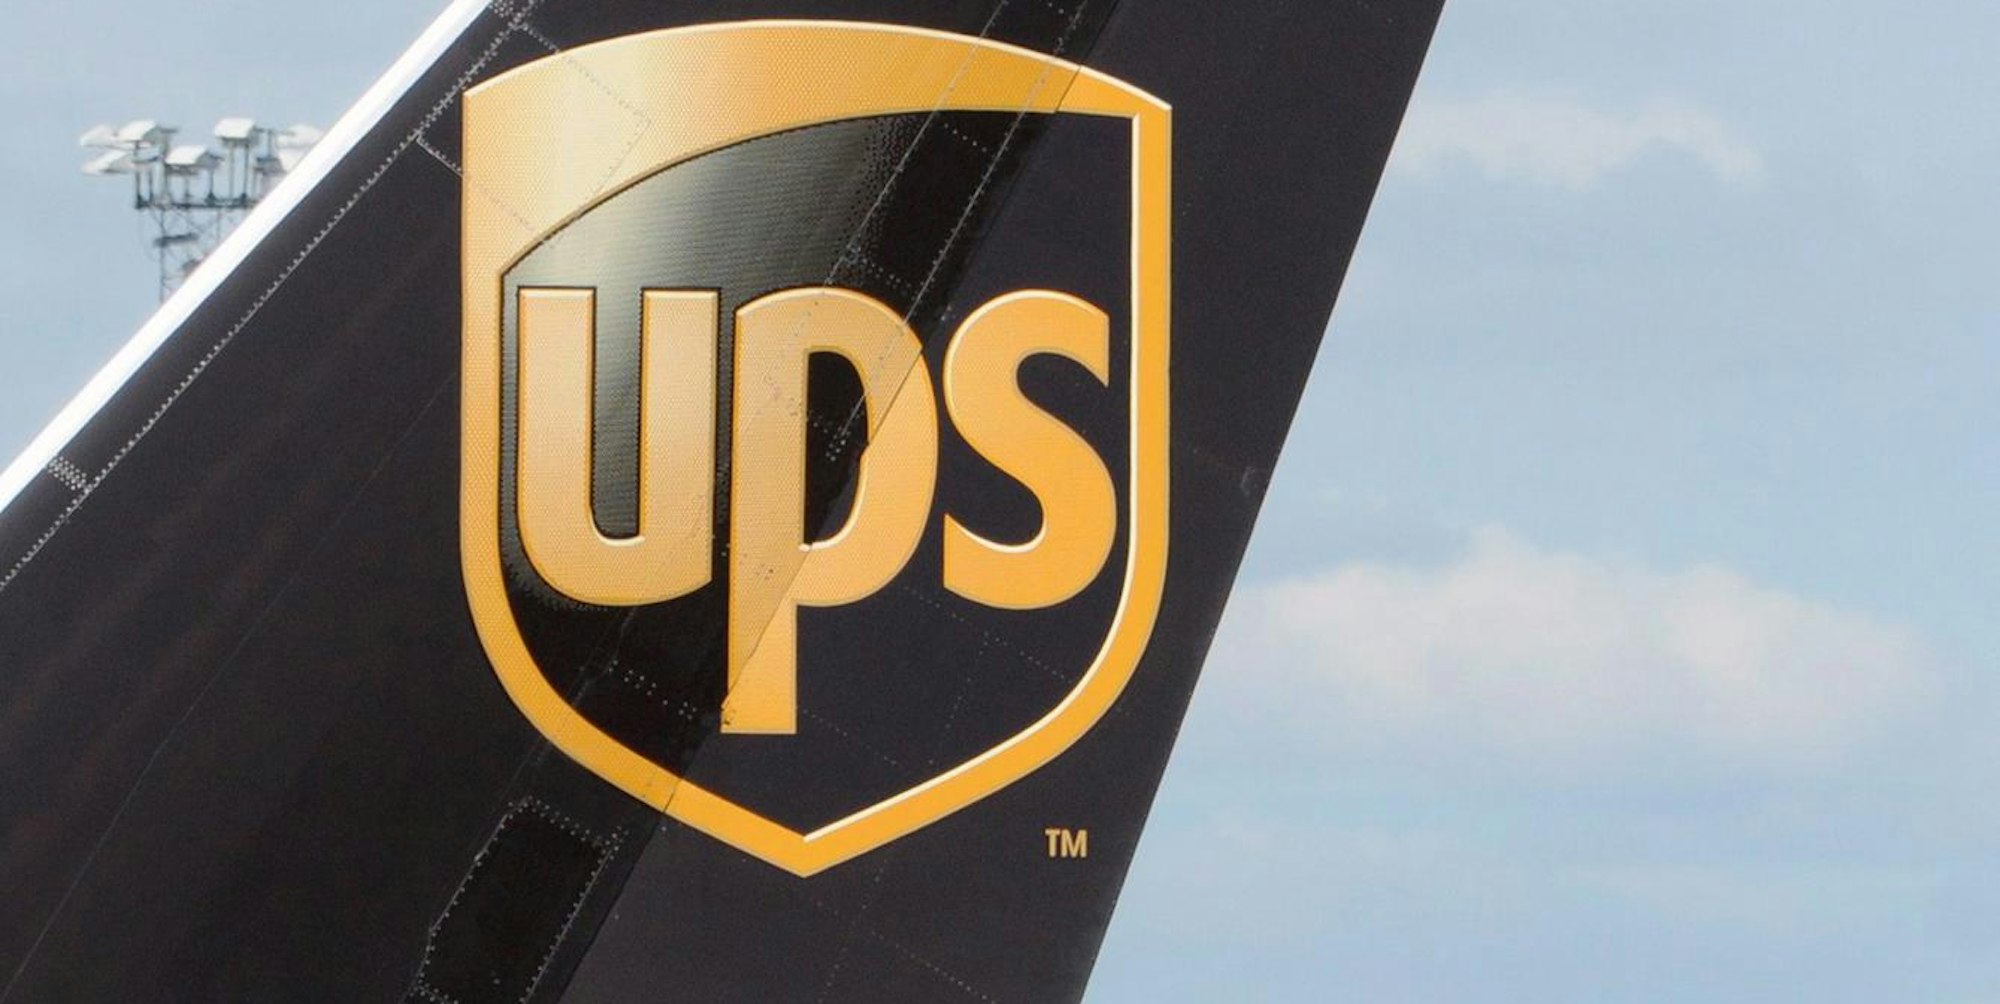 UPS Flugzeug dpa